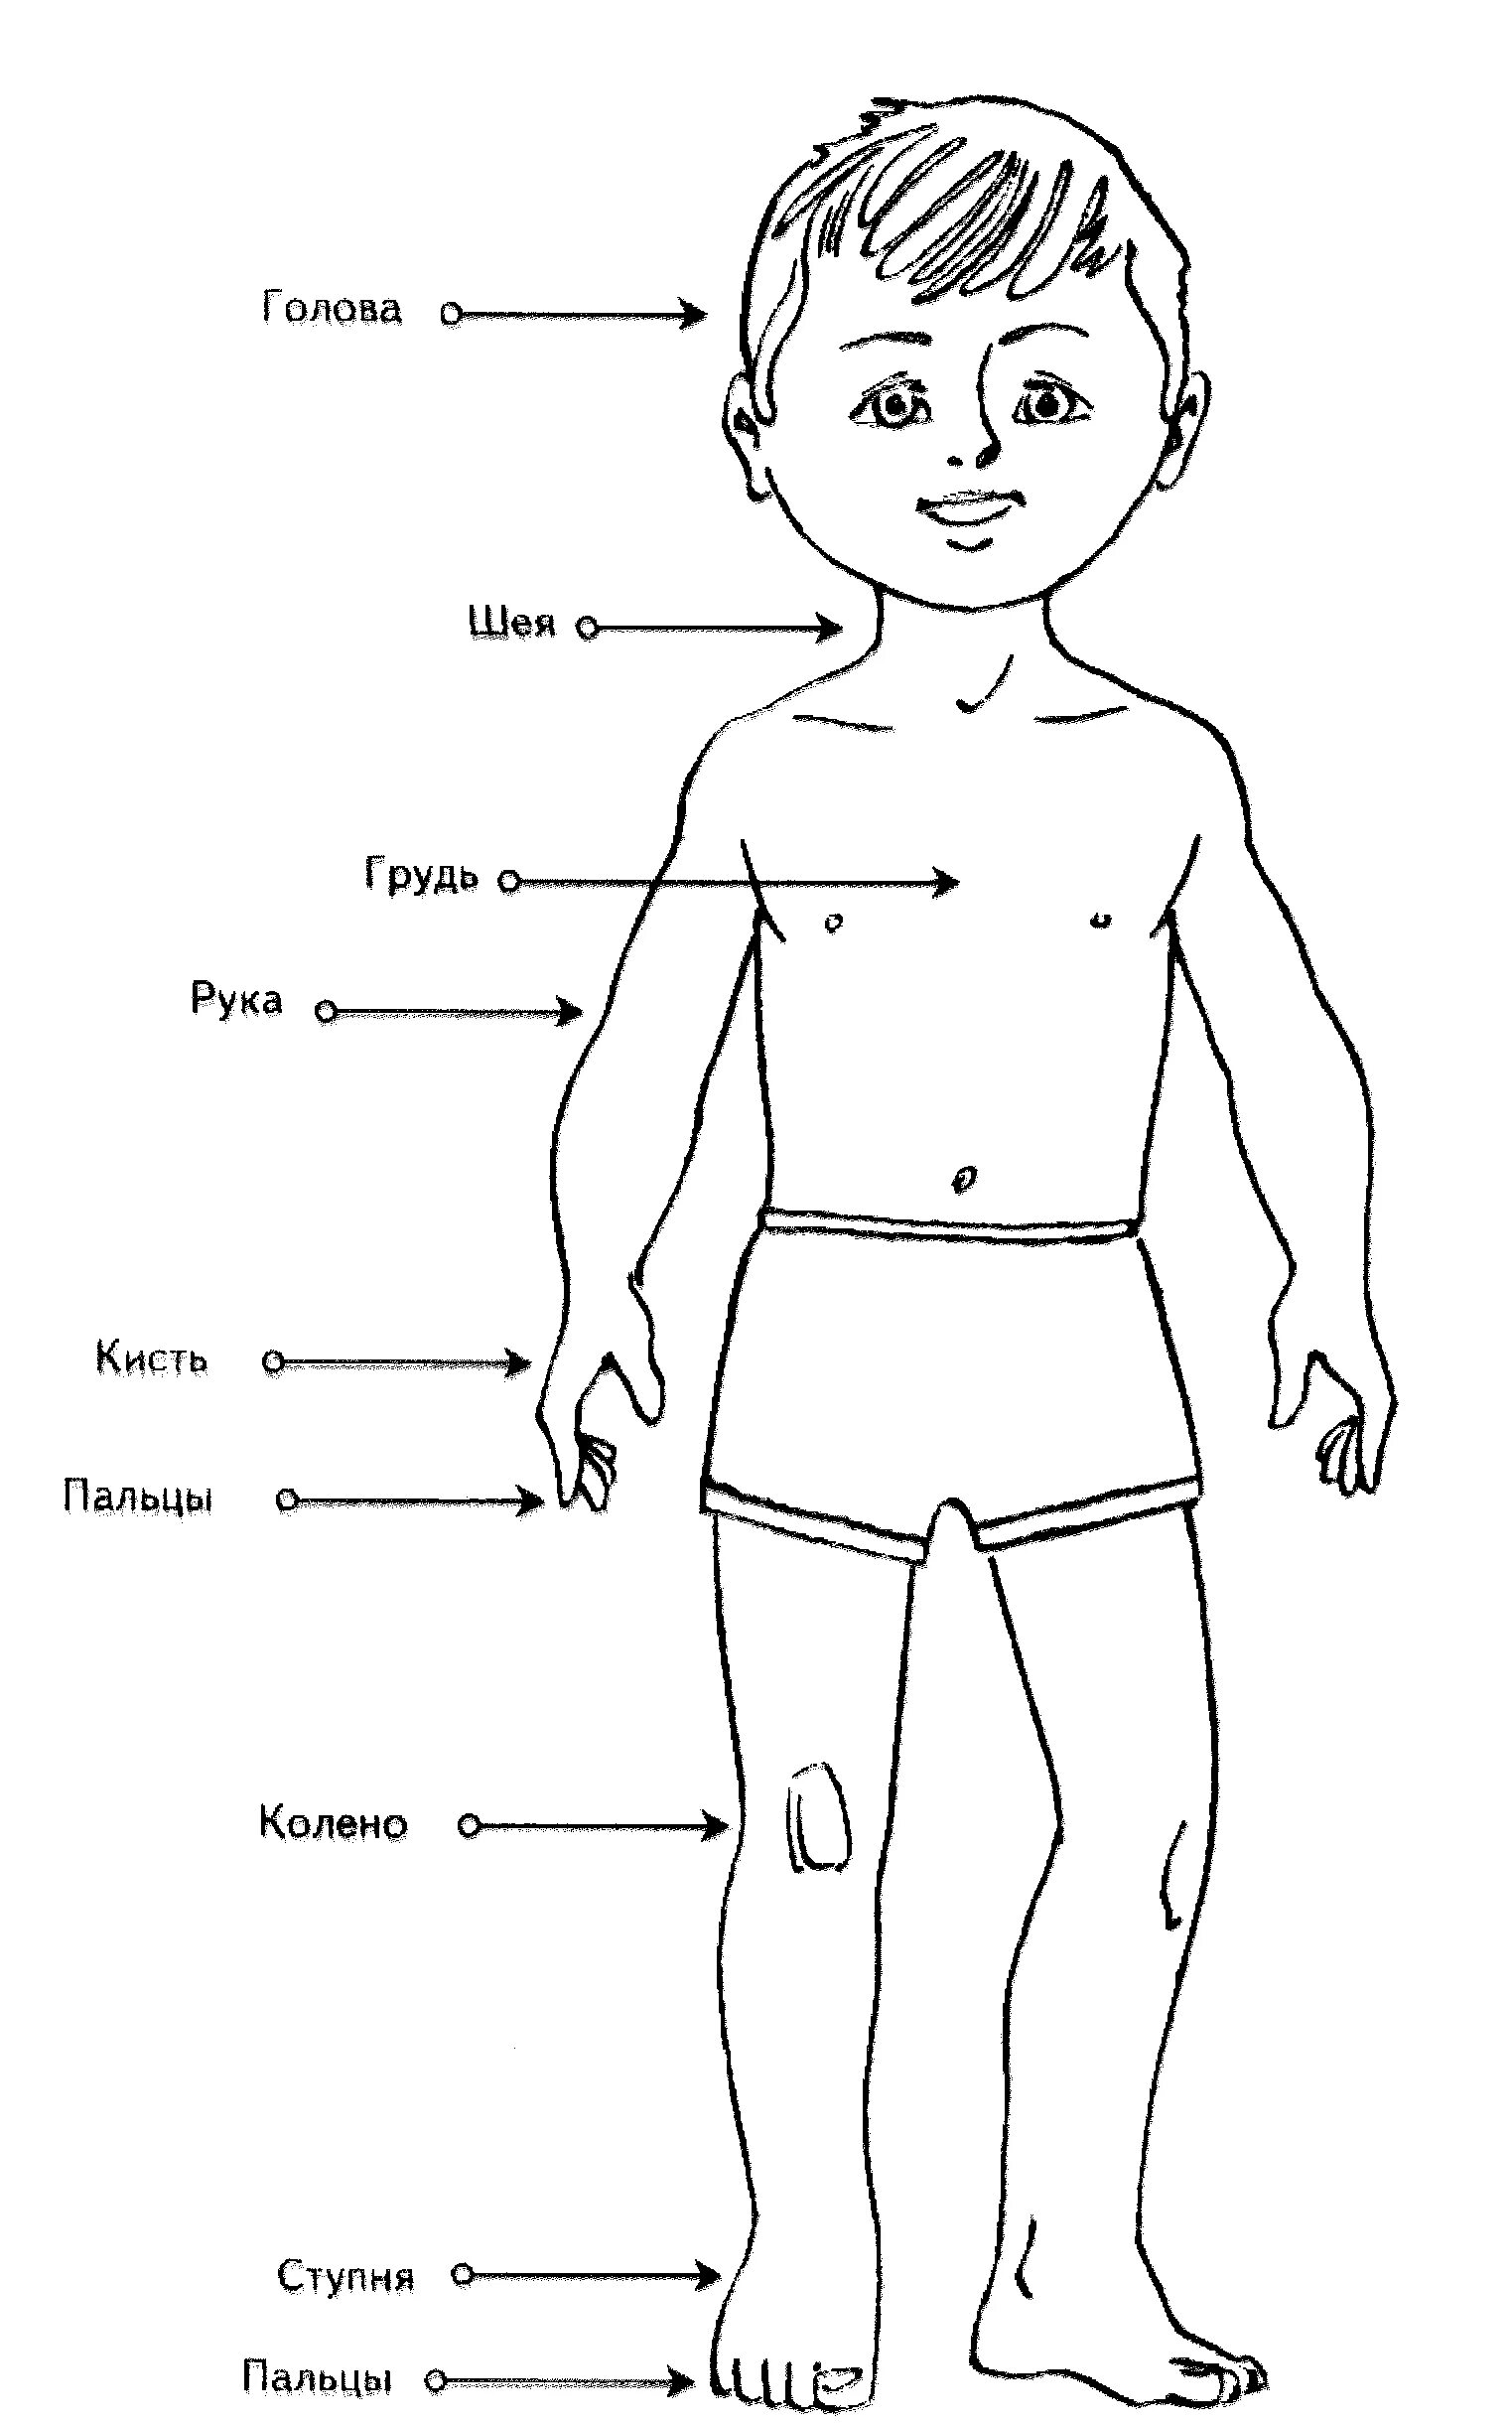 Фигура человека ребенка Изображения – скачать бесплатно на Freepik